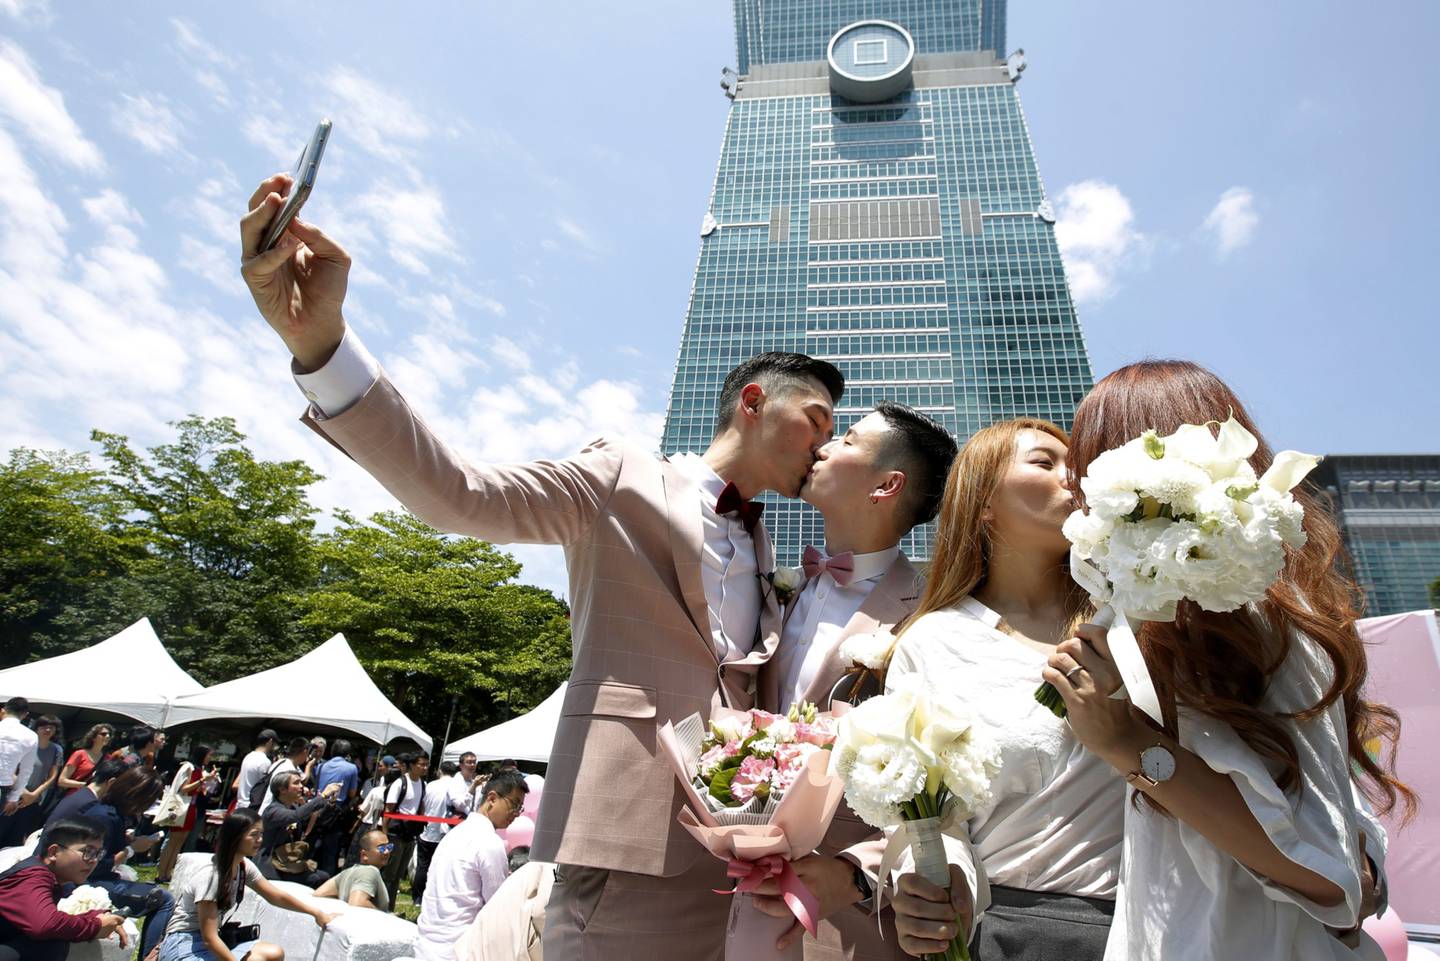 Parejas casadas se besan mientras posan para las fotografías frente al edificio Taipei 101 durante una fiesta a favor del matrimonio entre personas del mismo sexo organizada por el gobierno de la ciudad de Taipei y la Coalición por la Igualdad Matrimonial de Taiwán en Taipei, el viernes 24 de mayo de 2019.